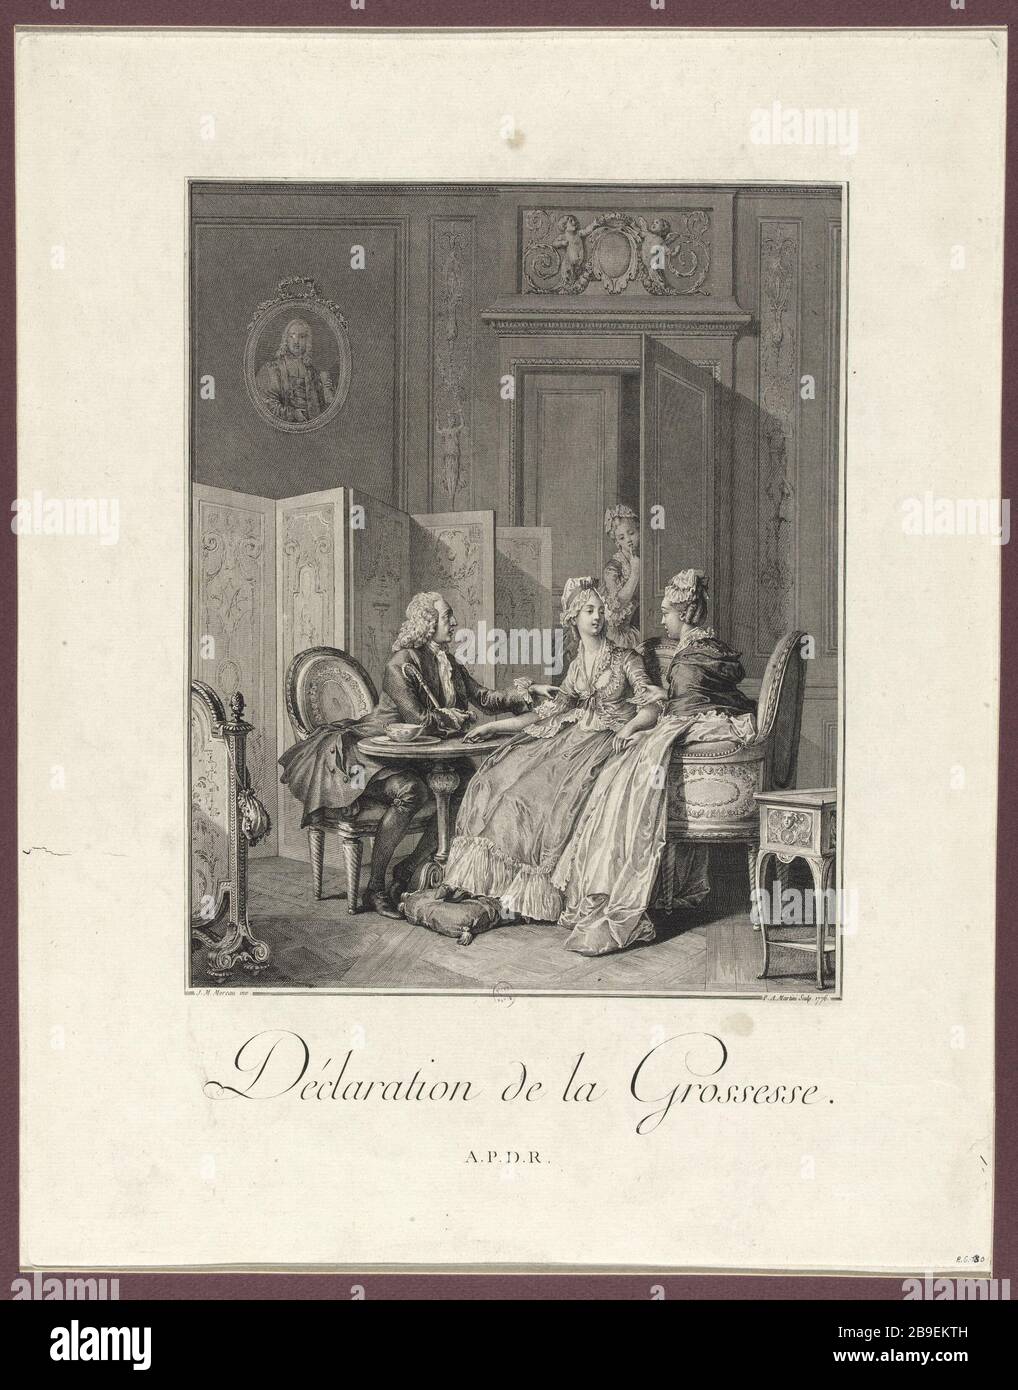 DECLARATION OF PREGNANCY jean-Charles Baquoy (1721-1777), d'après Moreau le Jeune. 'Déclaration de la grossesse'. Eau-forte, 1776. Paris, musée Carnavalet. Stock Photo